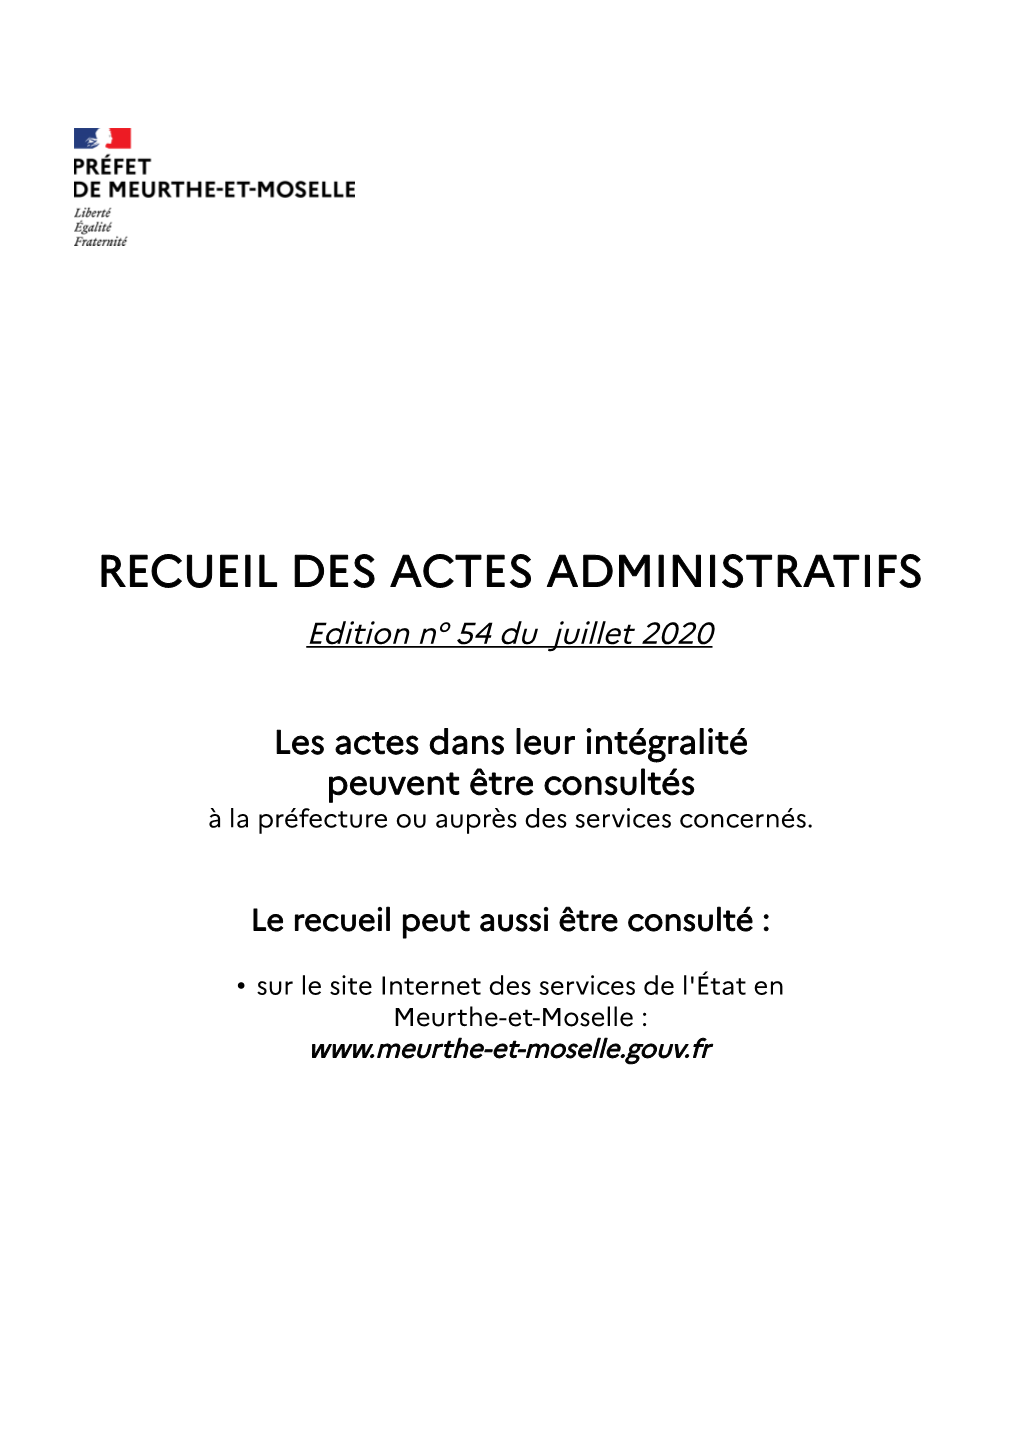 RECUEIL DES ACTES ADMINISTRATIFS Edition N° 54 Du Juillet 2020